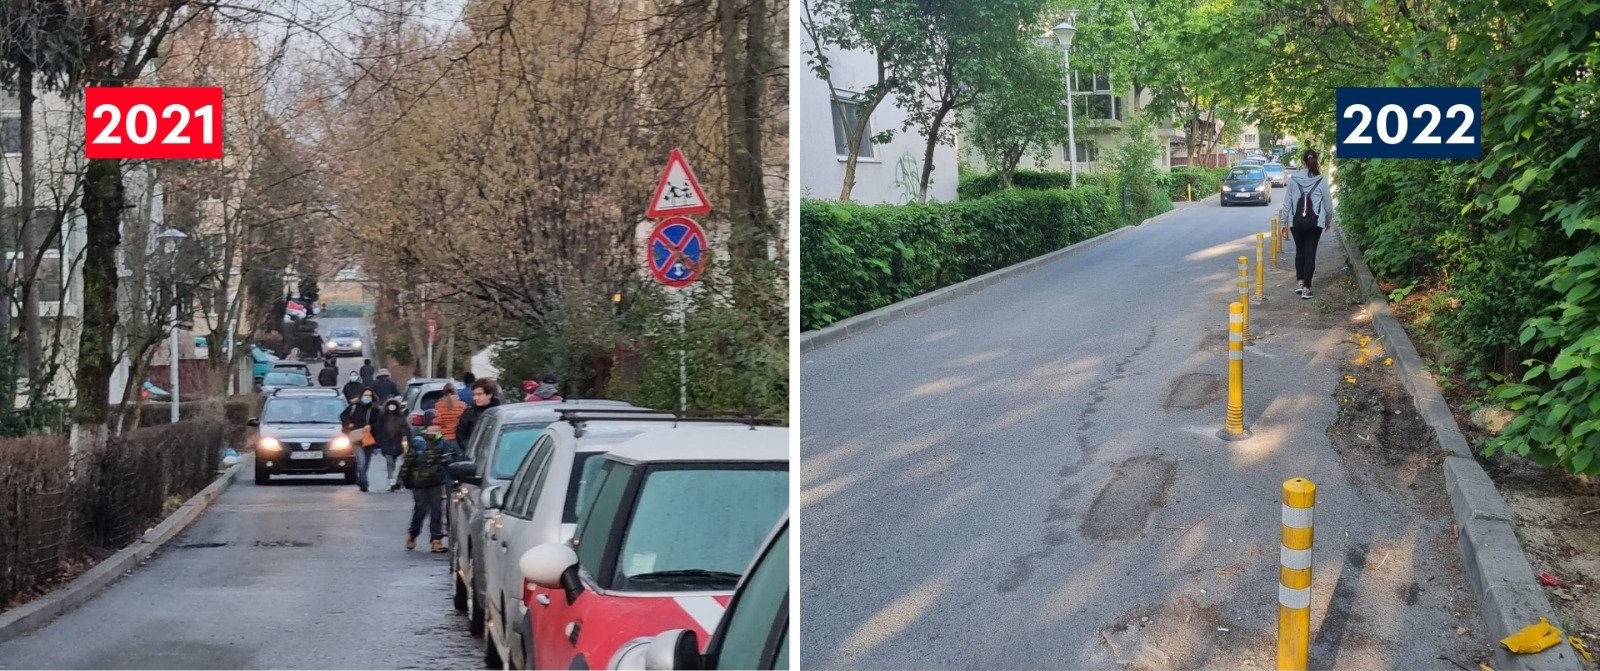 Străzi mai sigure pentru pietoni. Sursa foto: Facebook / Radu Boloveschi